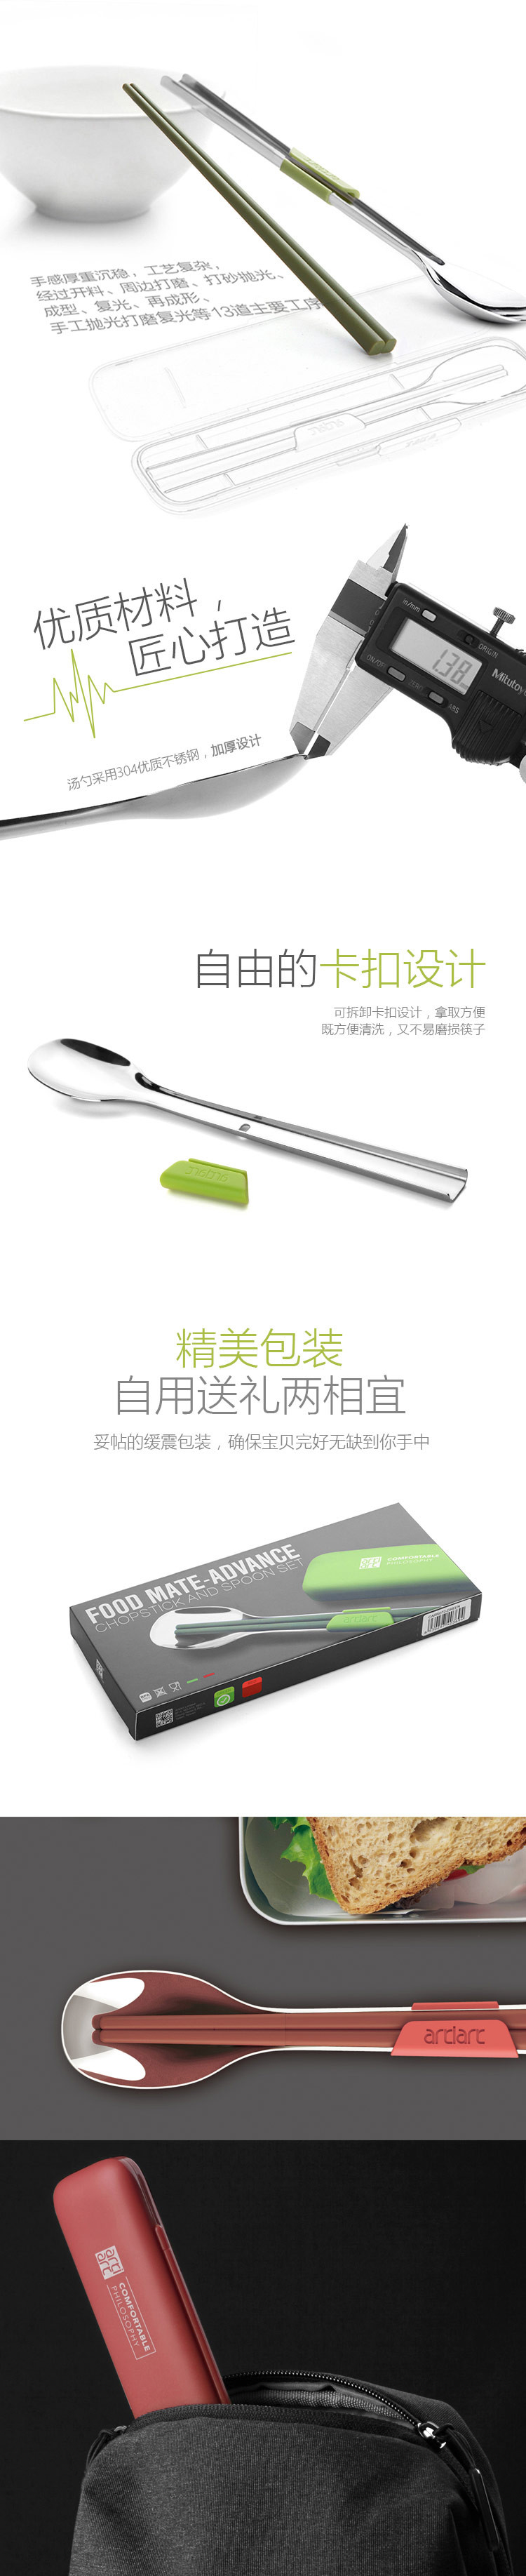 ARTIART 台湾artiart创意学生便携筷子不锈钢勺子餐具套装 红色